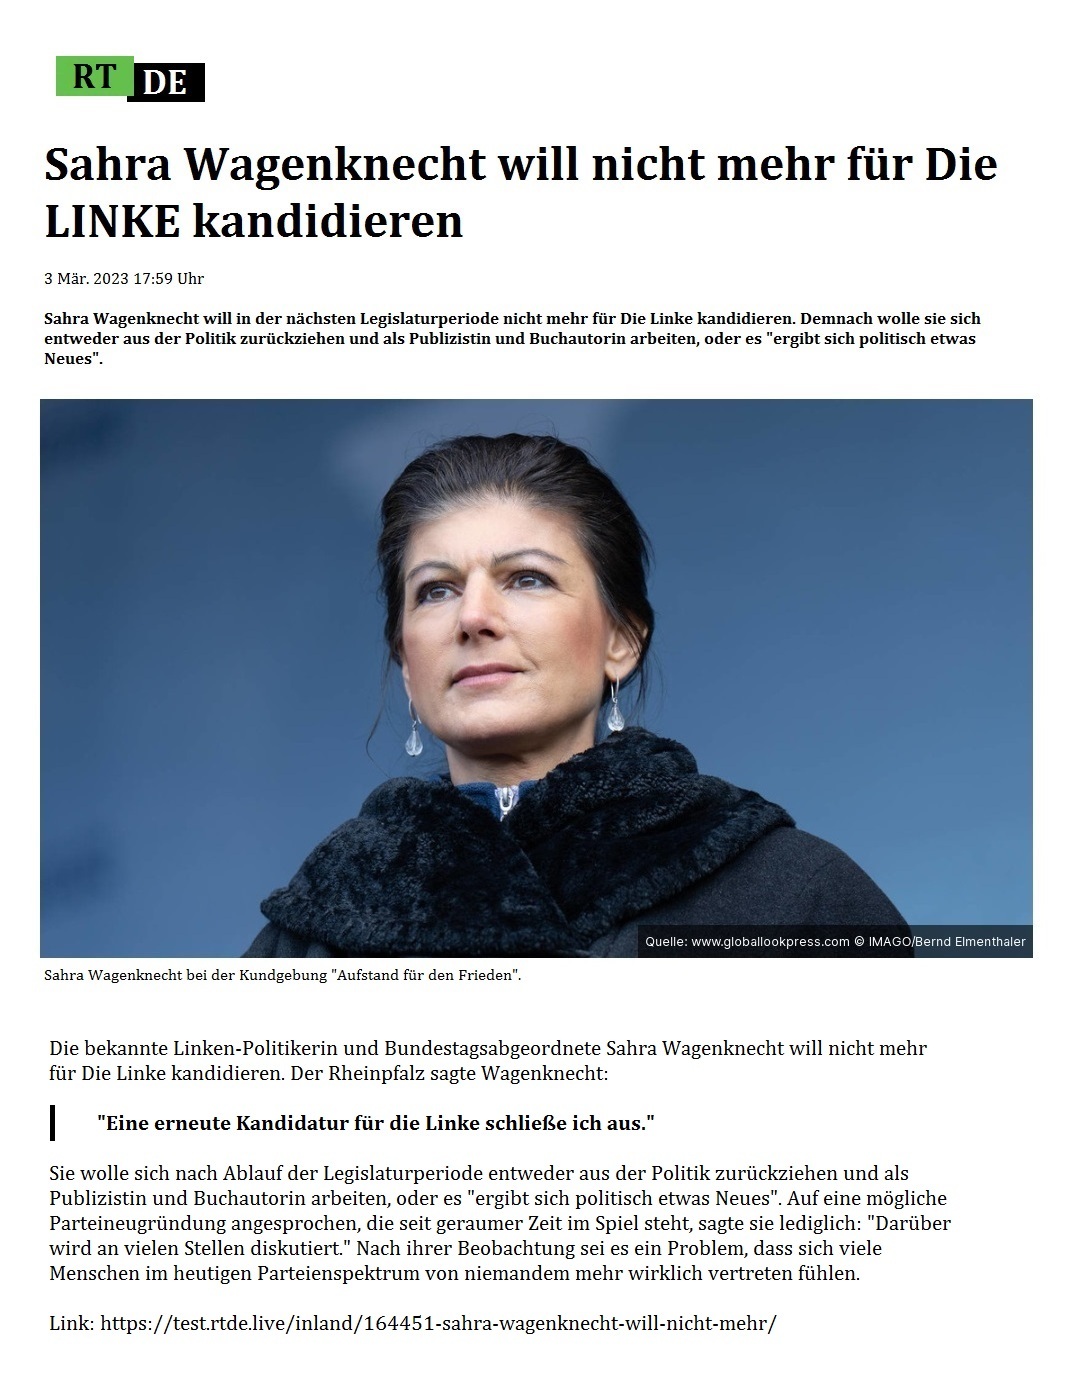 Sahra Wagenknecht will nicht mehr fr Die LINKE kandidieren - 3 Mr. 2023 17:59 Uhr - Sahra Wagenknecht will in der nchsten Legislaturperiode nicht mehr fr Die Linke kandidieren. Demnach wolle sie sich entweder aus der Politik zurckziehen und als Publizistin und Buchautorin arbeiten, oder es 'ergibt sich politisch etwas Neues'. - 3 Mr. 2023 17:59 Uhr - RT DE - Link: https://test.rtde.live/inland/164451-sahra-wagenknecht-will-nicht-mehr/